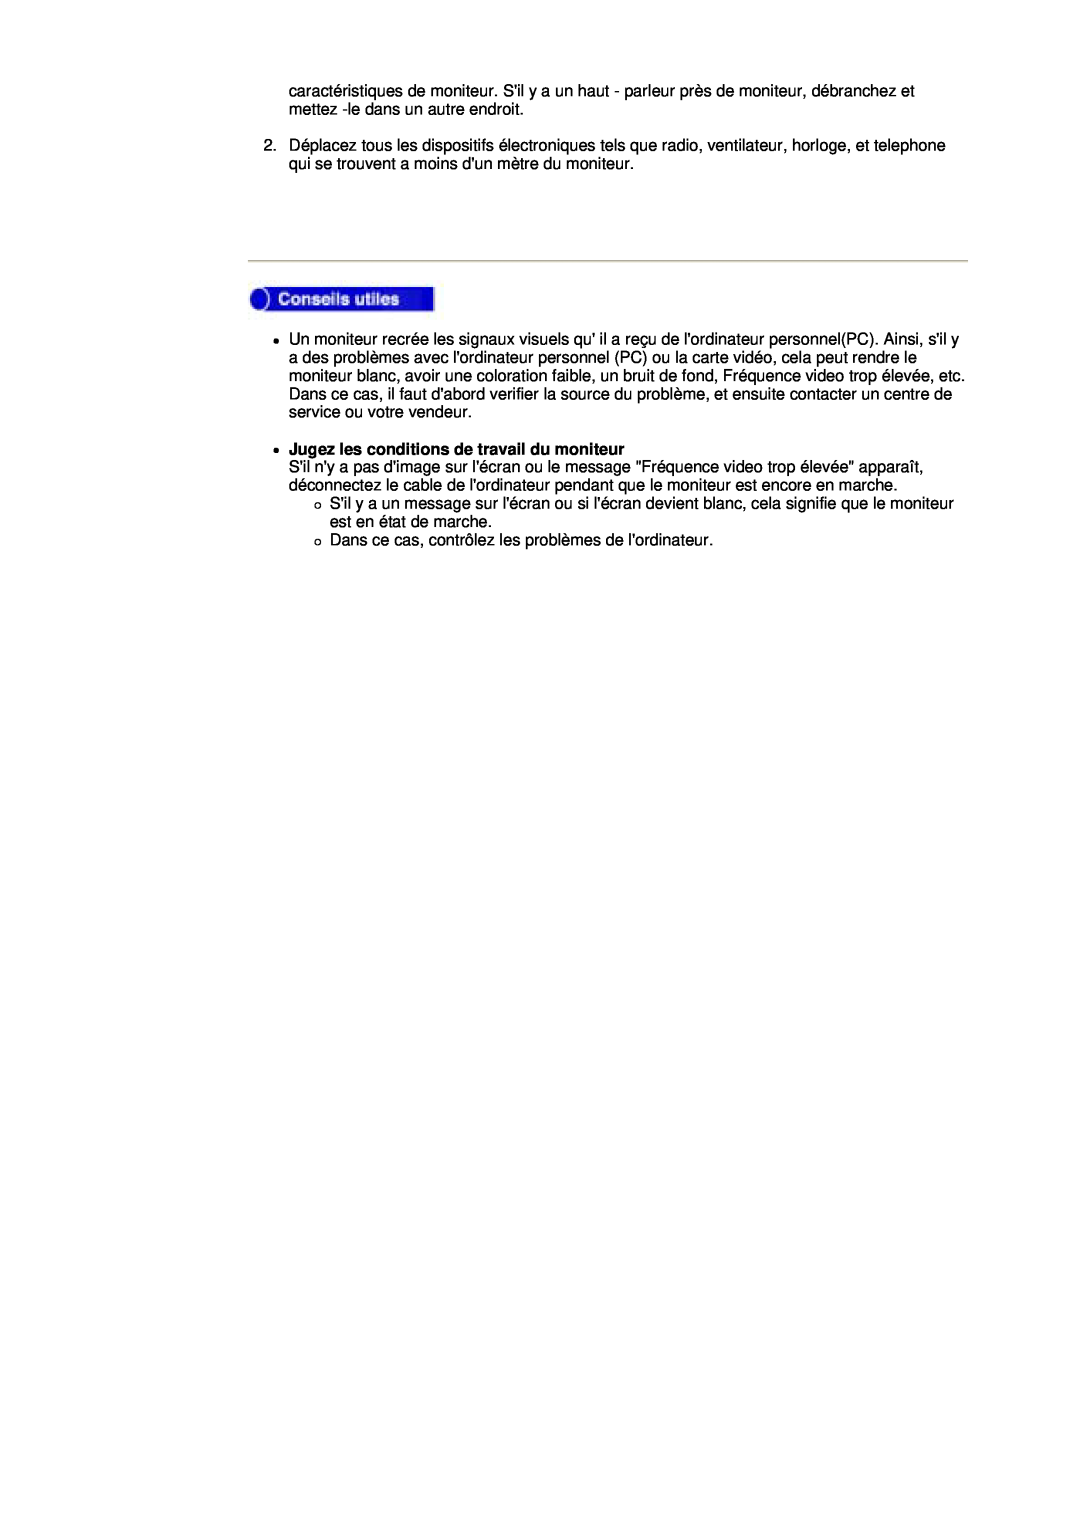 Samsung 153S, V manual zJugez les conditions de travail du moniteur 